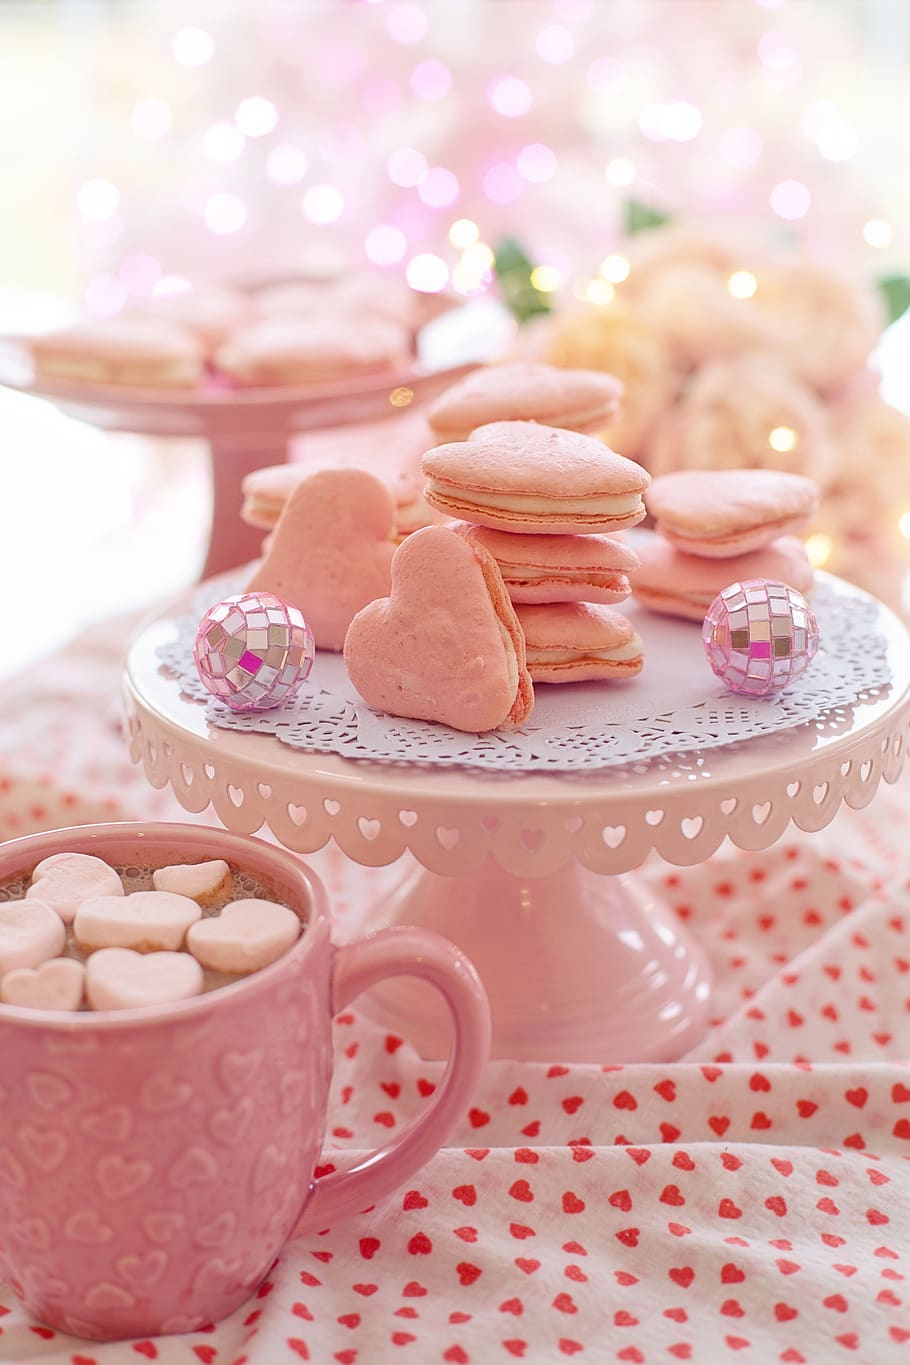 hari valentine, suguhan, permen, macarons, pink, hati, berbentuk hati, kue, valentine, cinta